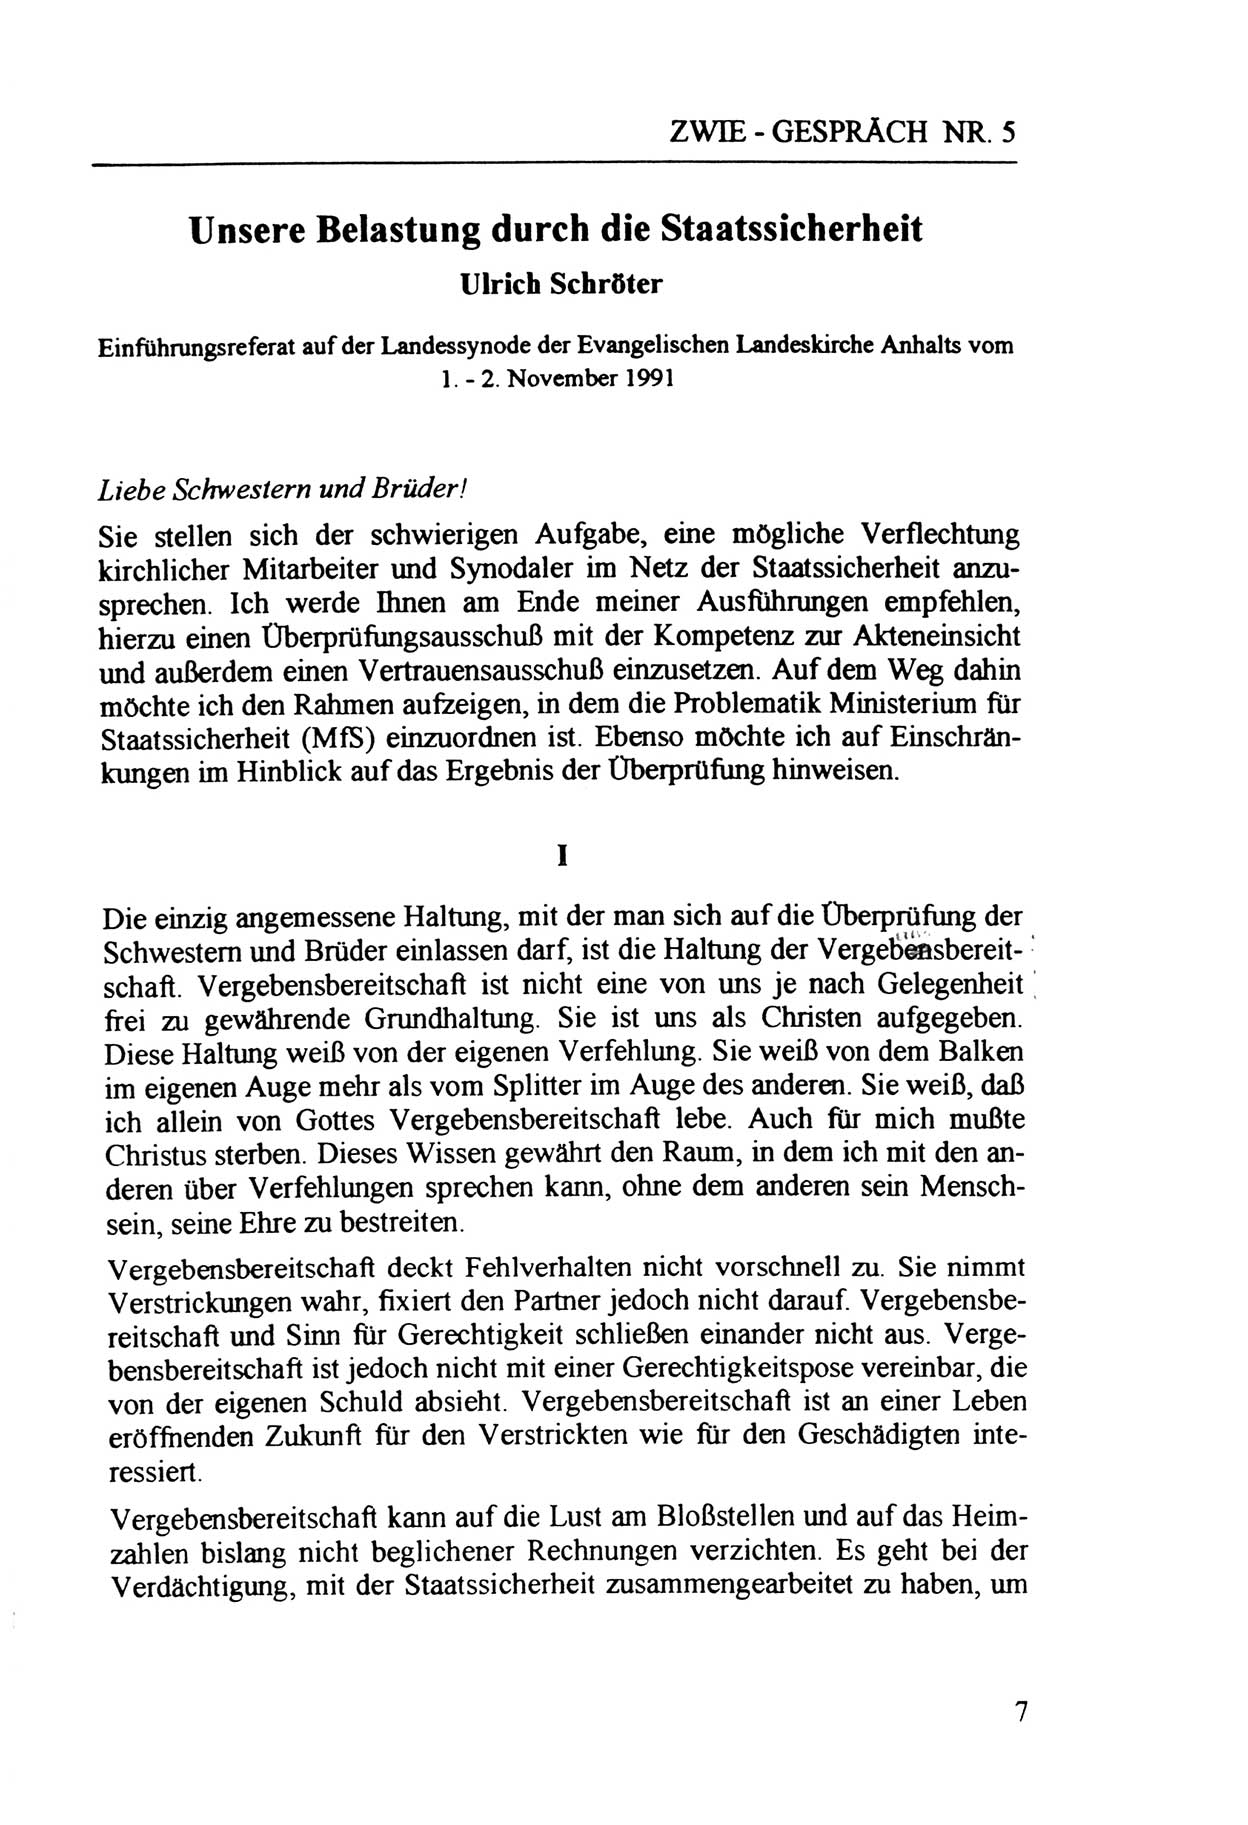 Zwie-Gespräch, Beiträge zur Aufarbeitung der Staatssicherheits-Vergangenheit [Deutsche Demokratische Republik (DDR)], Ausgabe Nr. 5, Berlin 1991, Seite 7 (Zwie-Gespr. Ausg. 5 1991, S. 7)